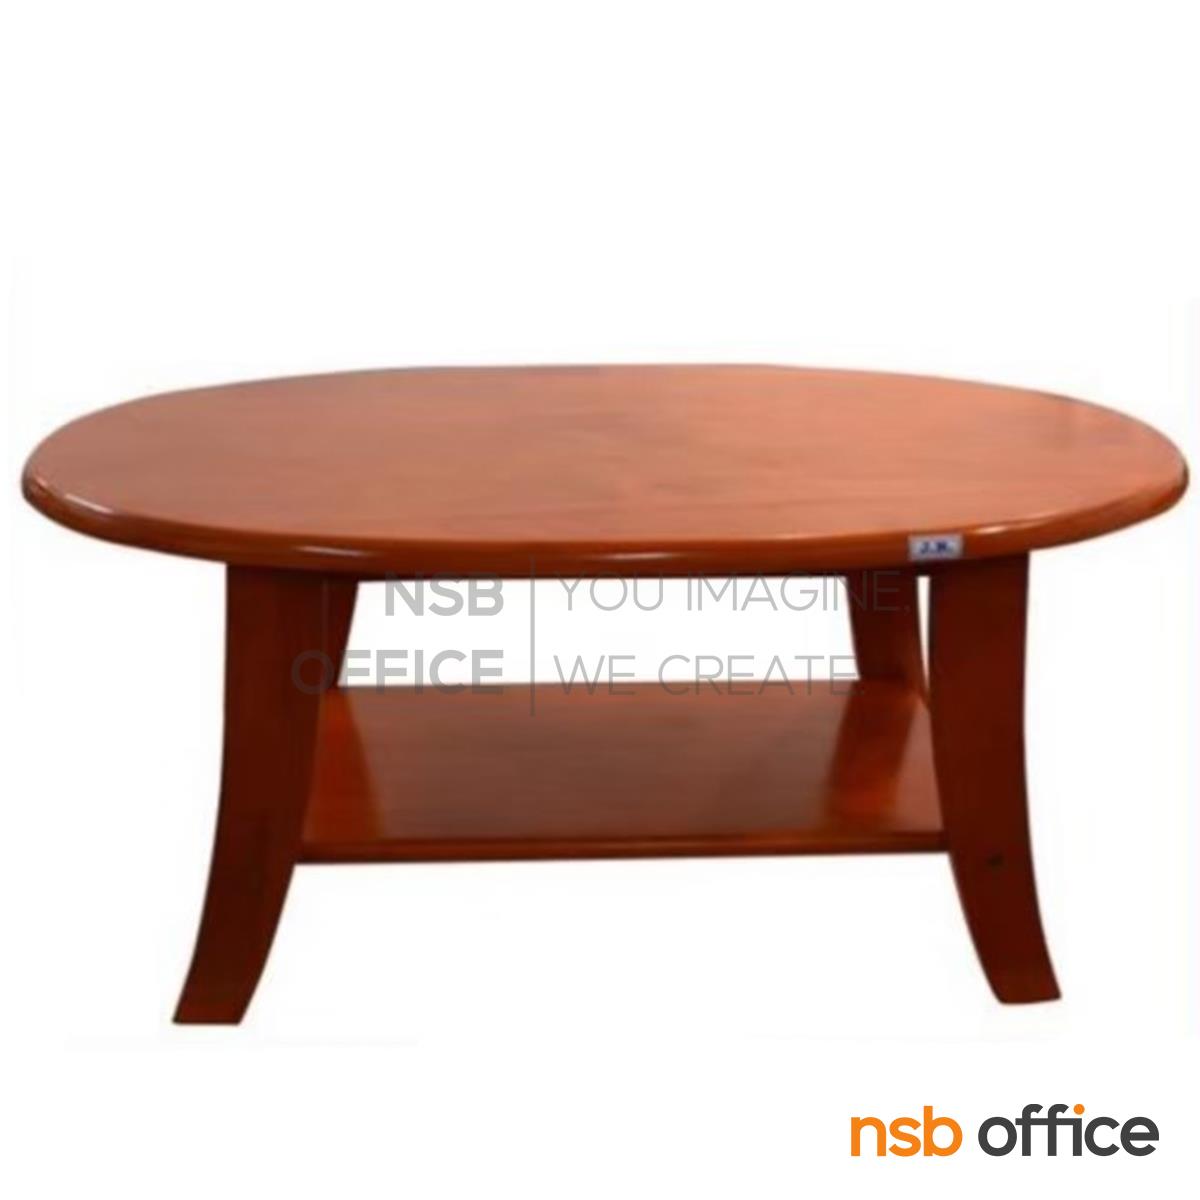 โต๊ะกลางไม้ยางพารา รุ่น Porter (พอร์เตอร์) ขนาด 53 cm. 